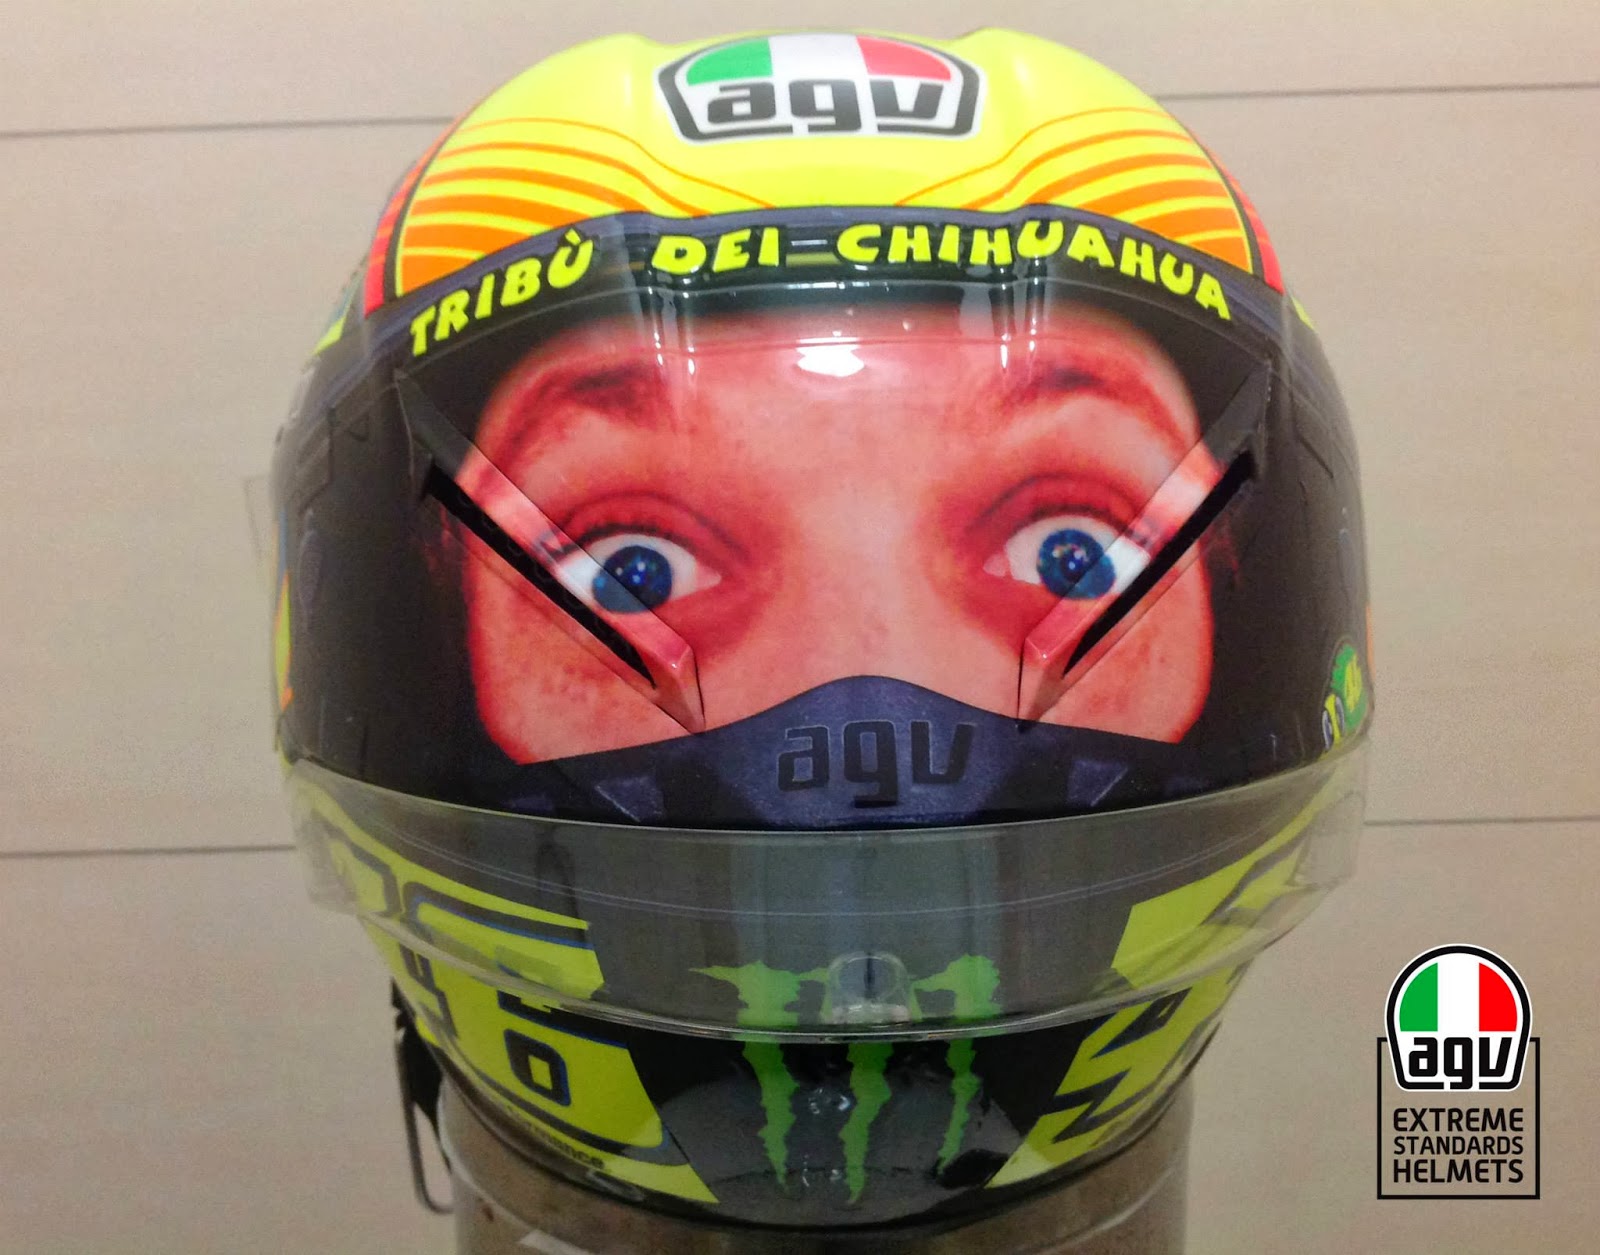 Valentino Rossi "Second Eyes" helmet - 600RR.net